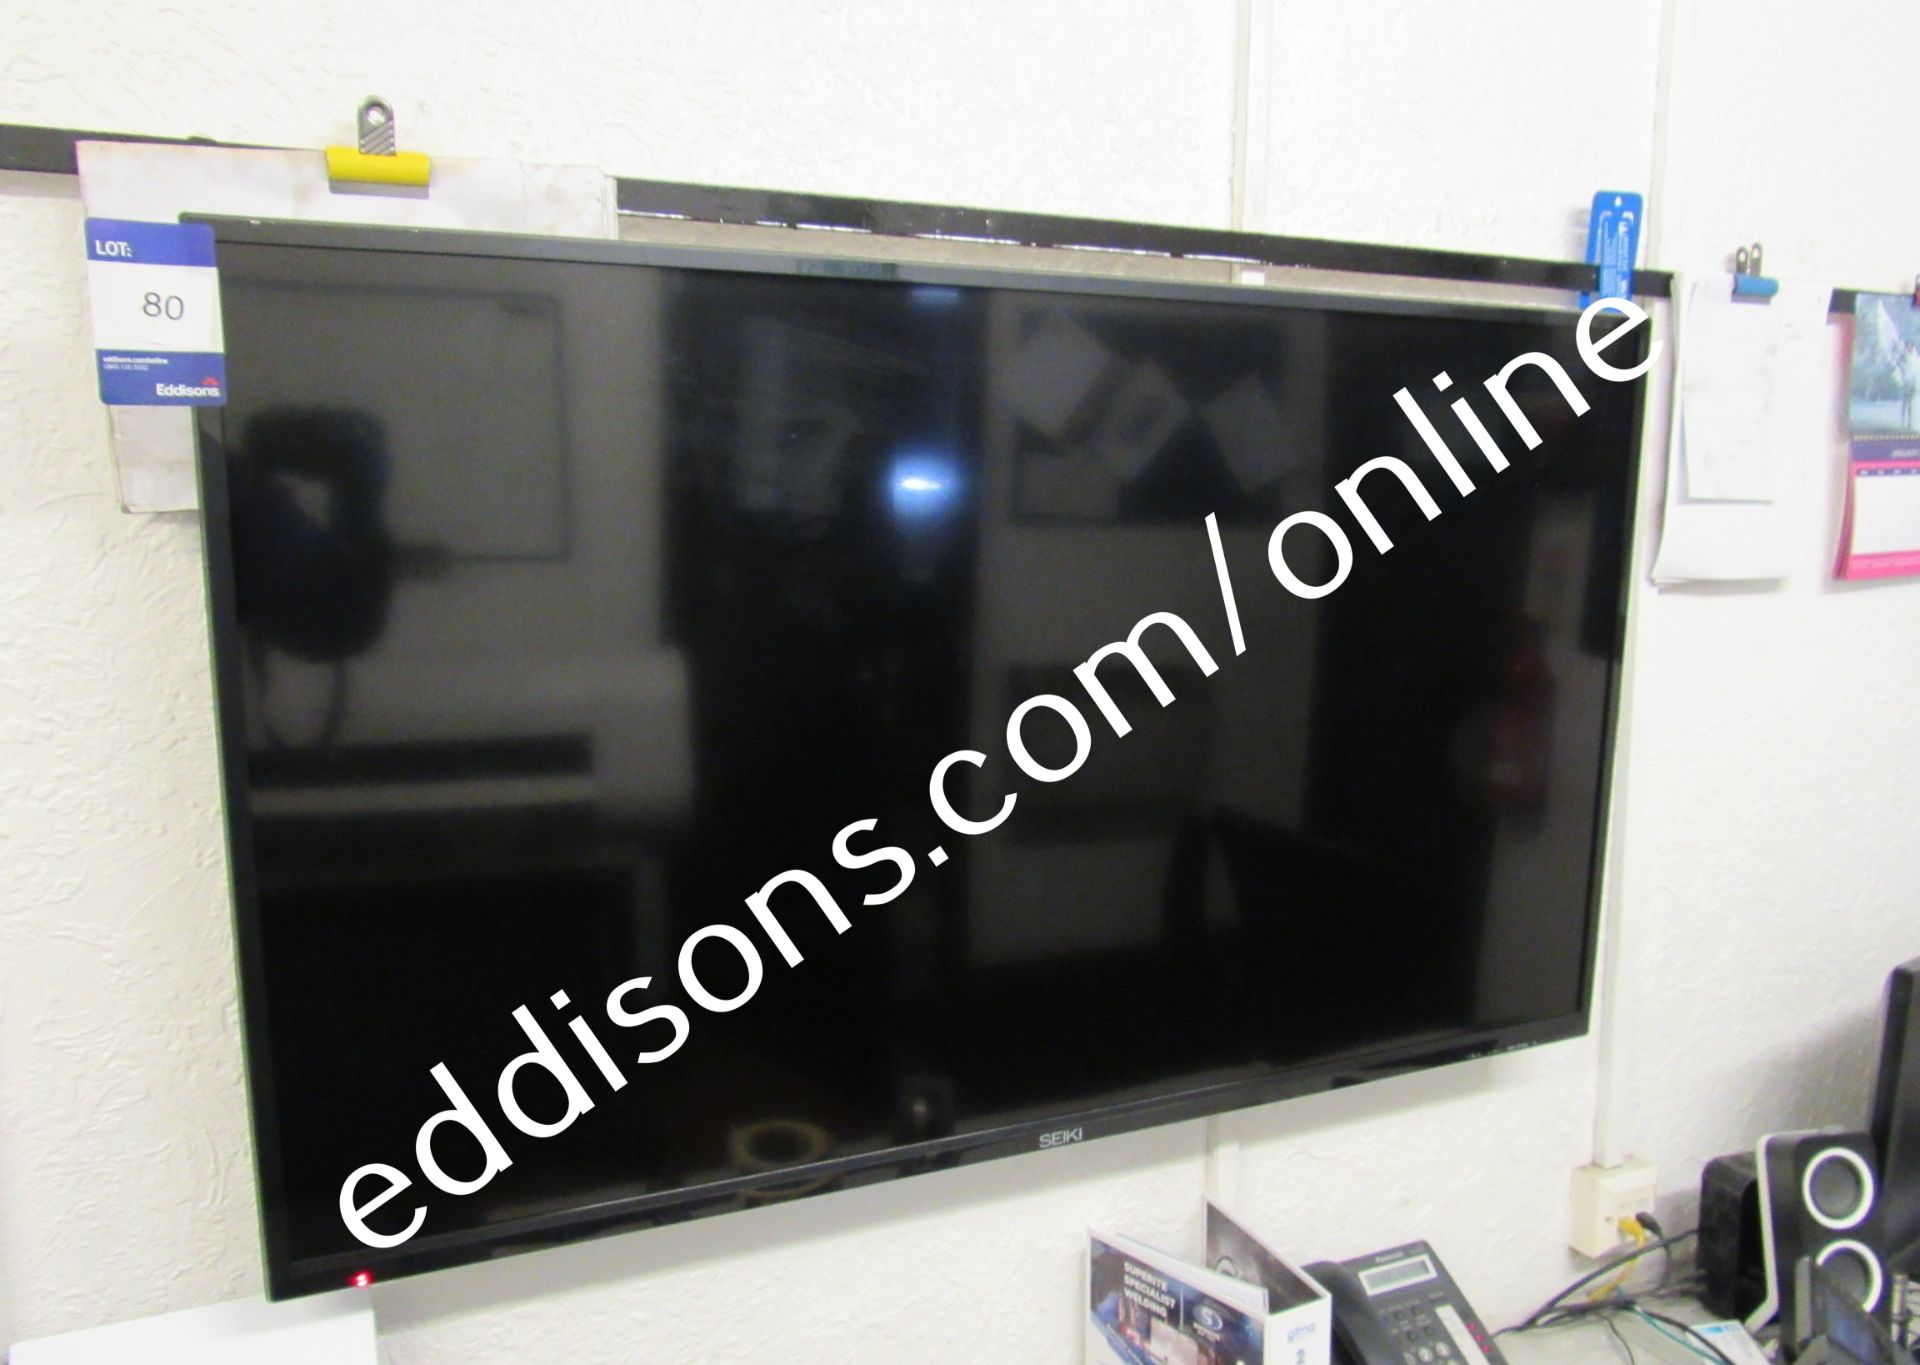 Seki wall mounted TV - Image 2 of 2